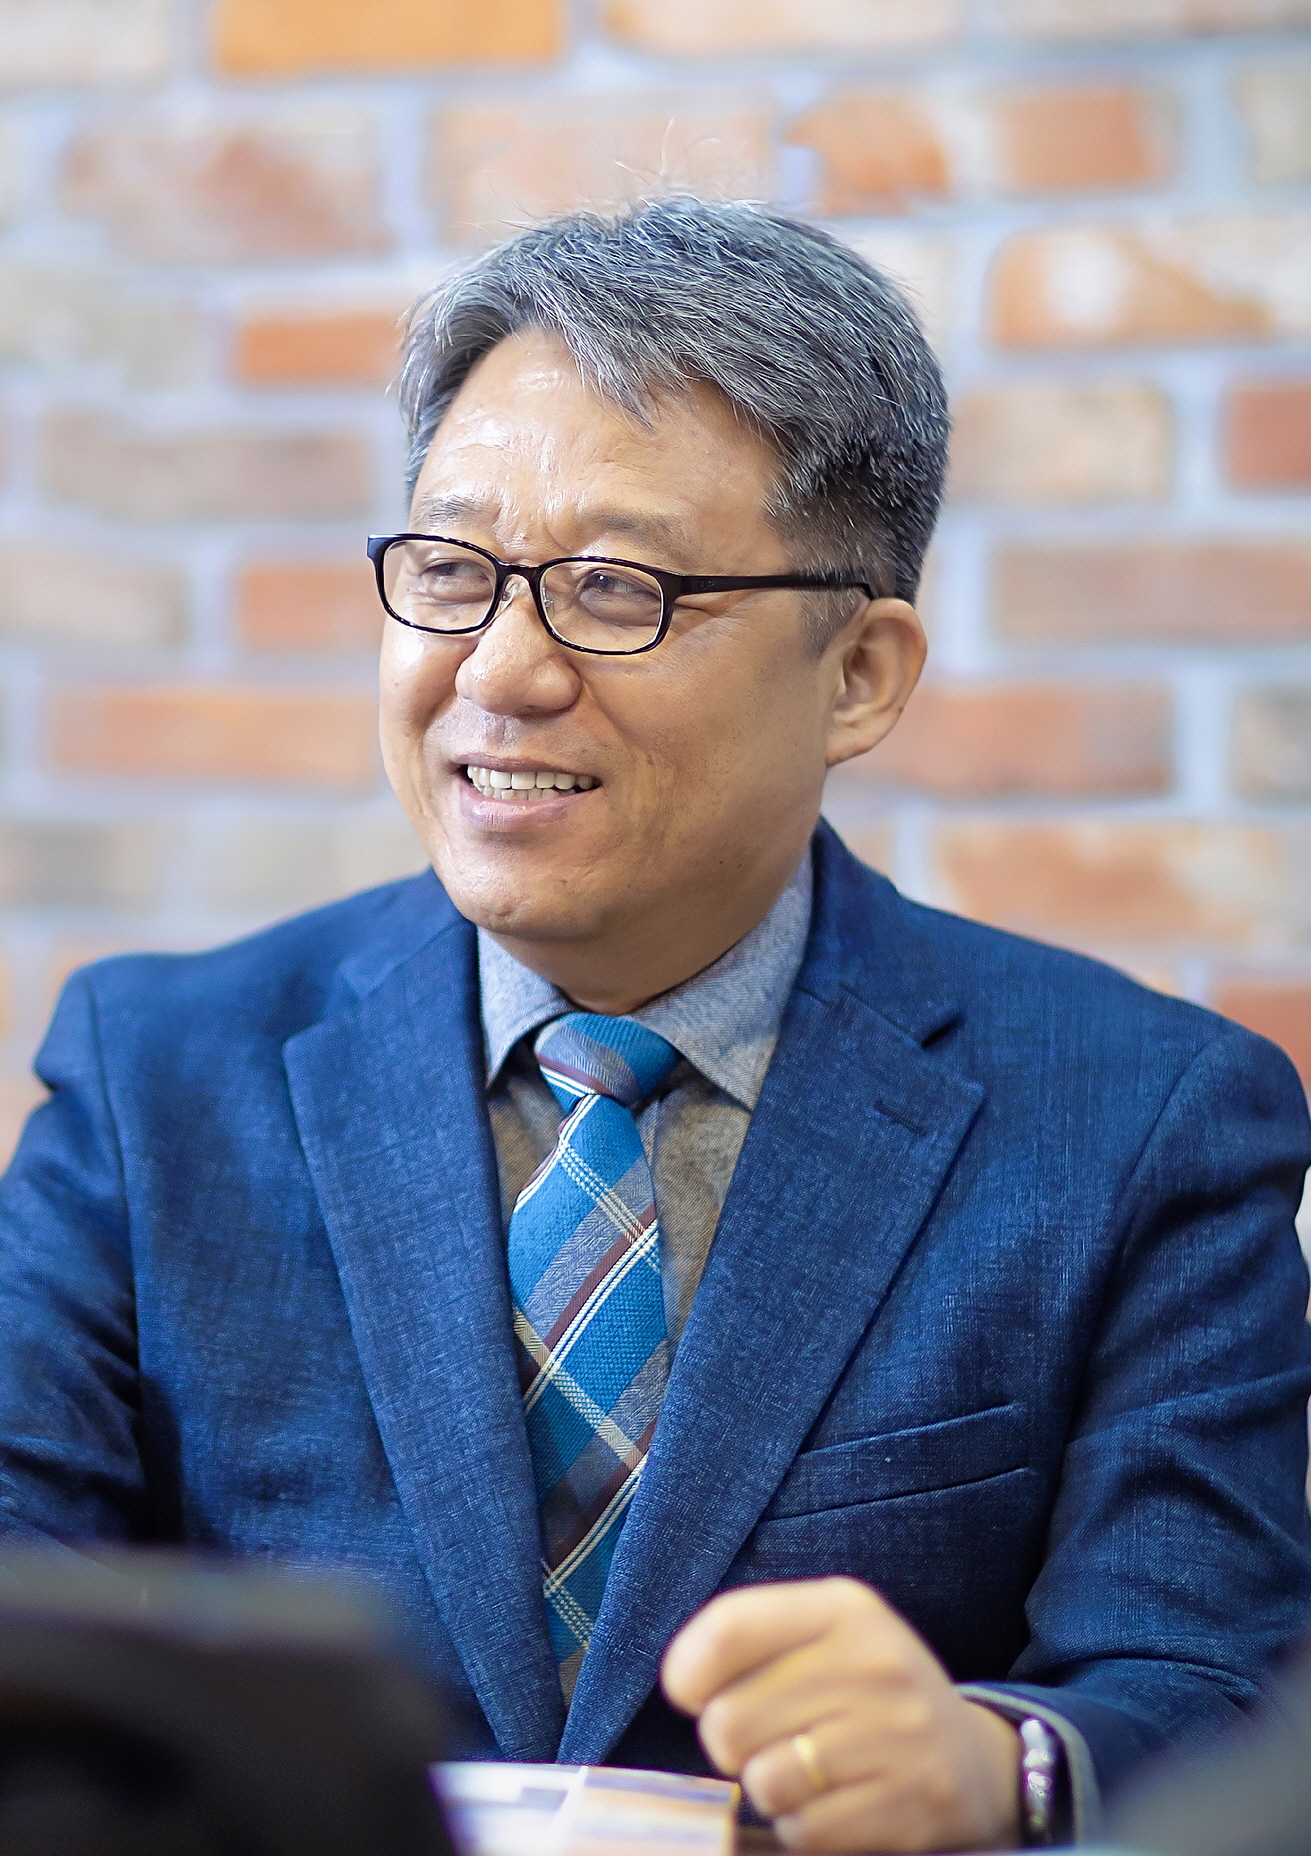 김지형 교수 (대학원 글로벌한국학전공 주임교수) 사진